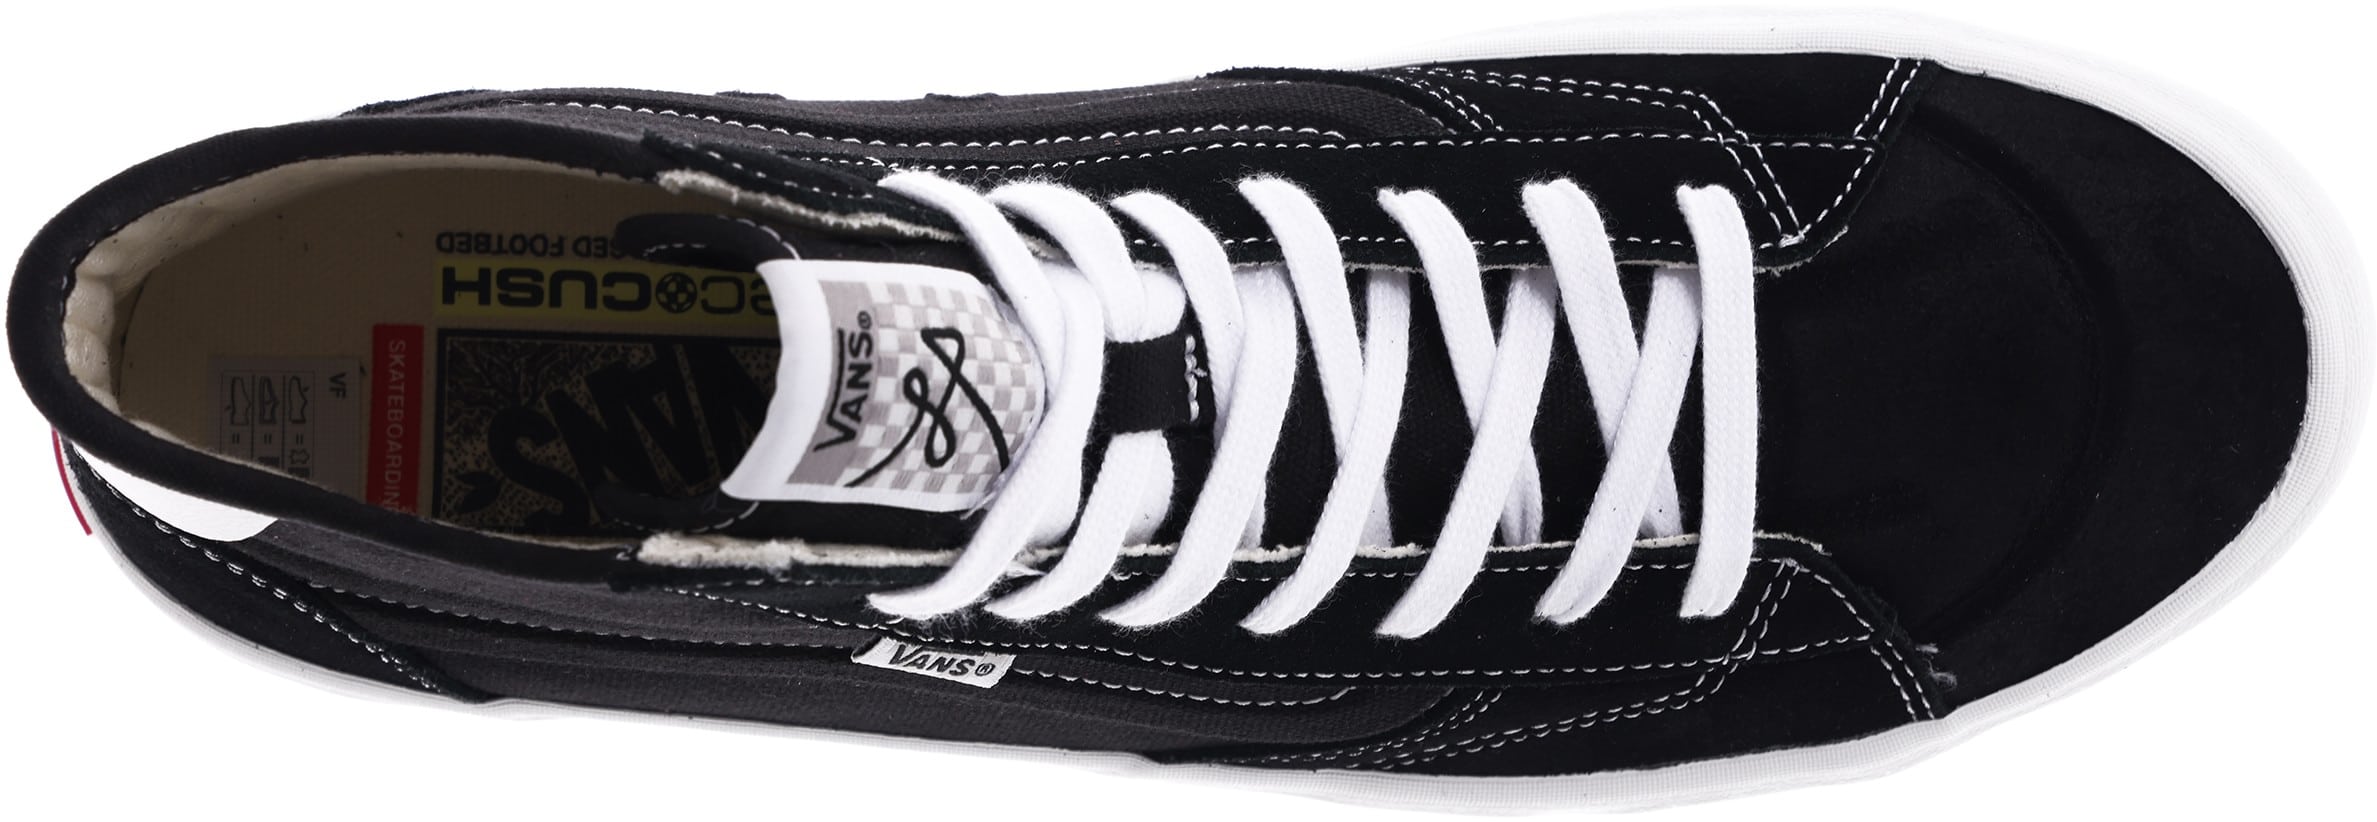 Vans The Lizzie Pro Skate Shoes - black/white | Tactics